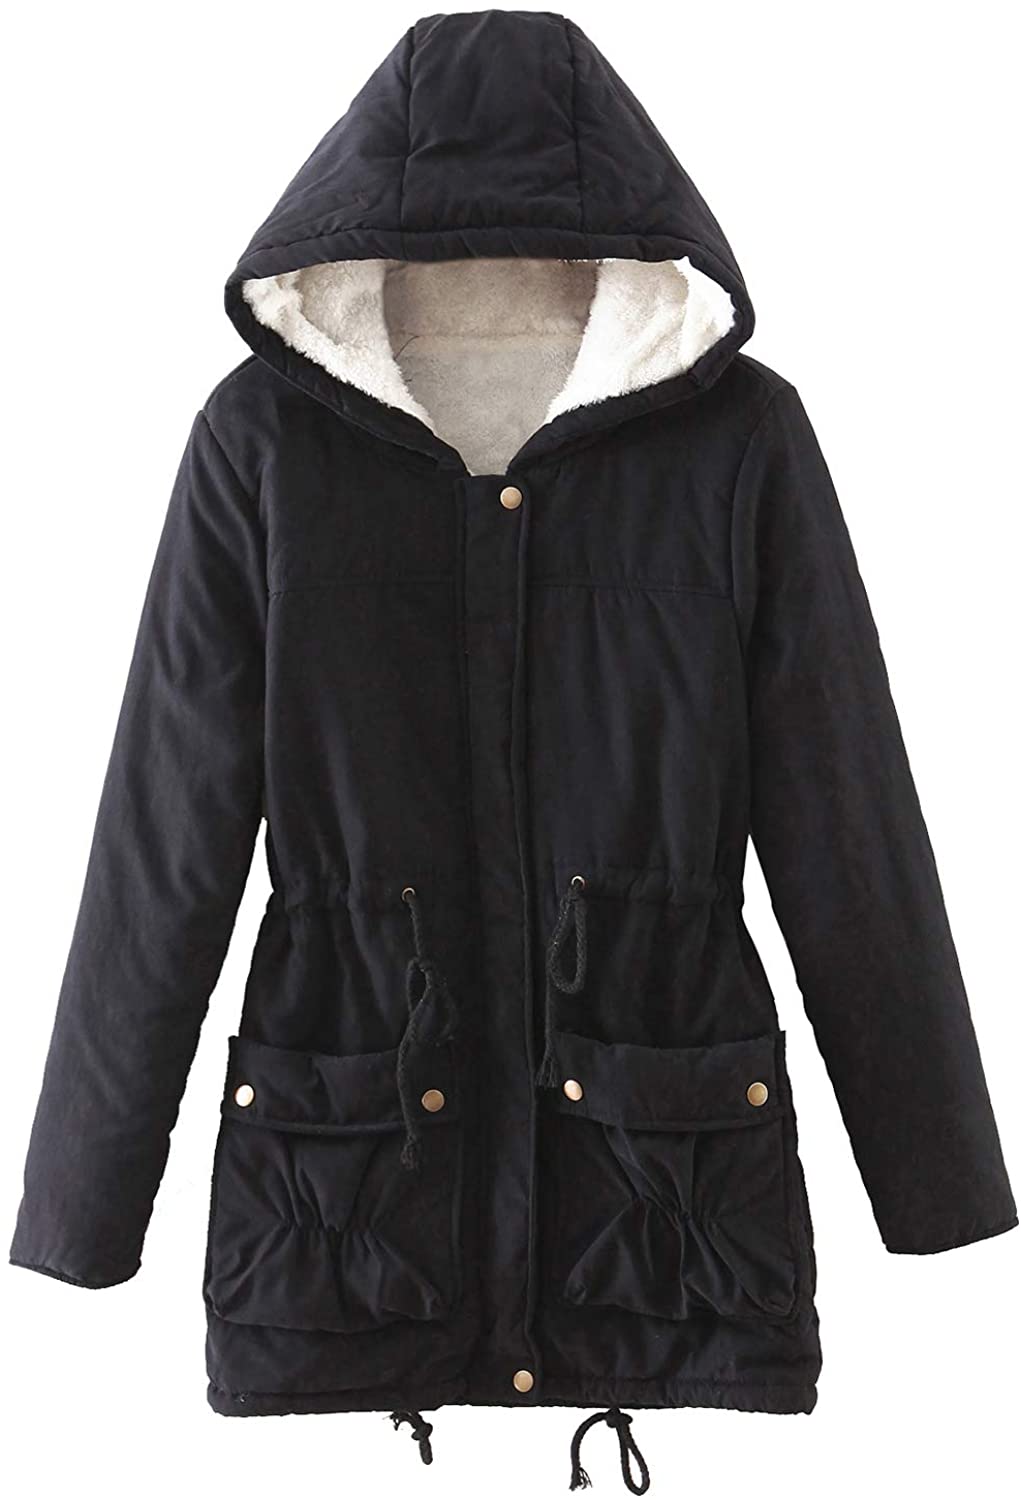 ACE SHOCK Faux Fur Coat Women Hooded Long Winter Jacket Casual Warm Outwear 2 Colors Size XS-XL